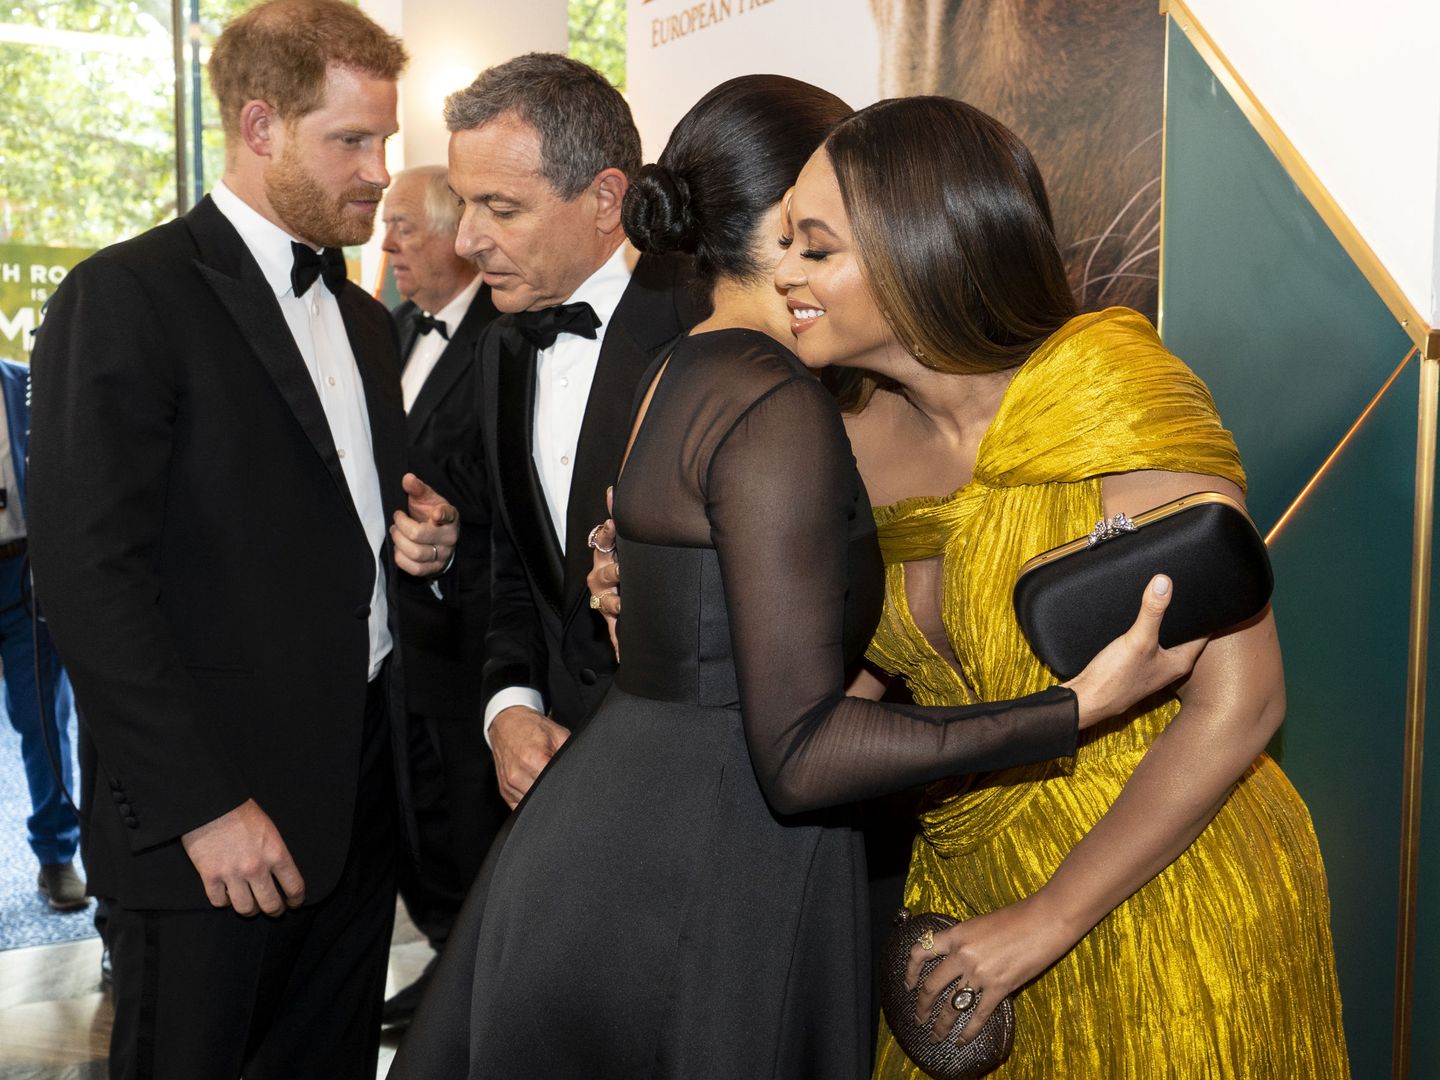 El príncipe Harry, hablando con el productor de Disney, Bob Iger, mientras Meghan abraza a Beyoncé. (Reuters) 